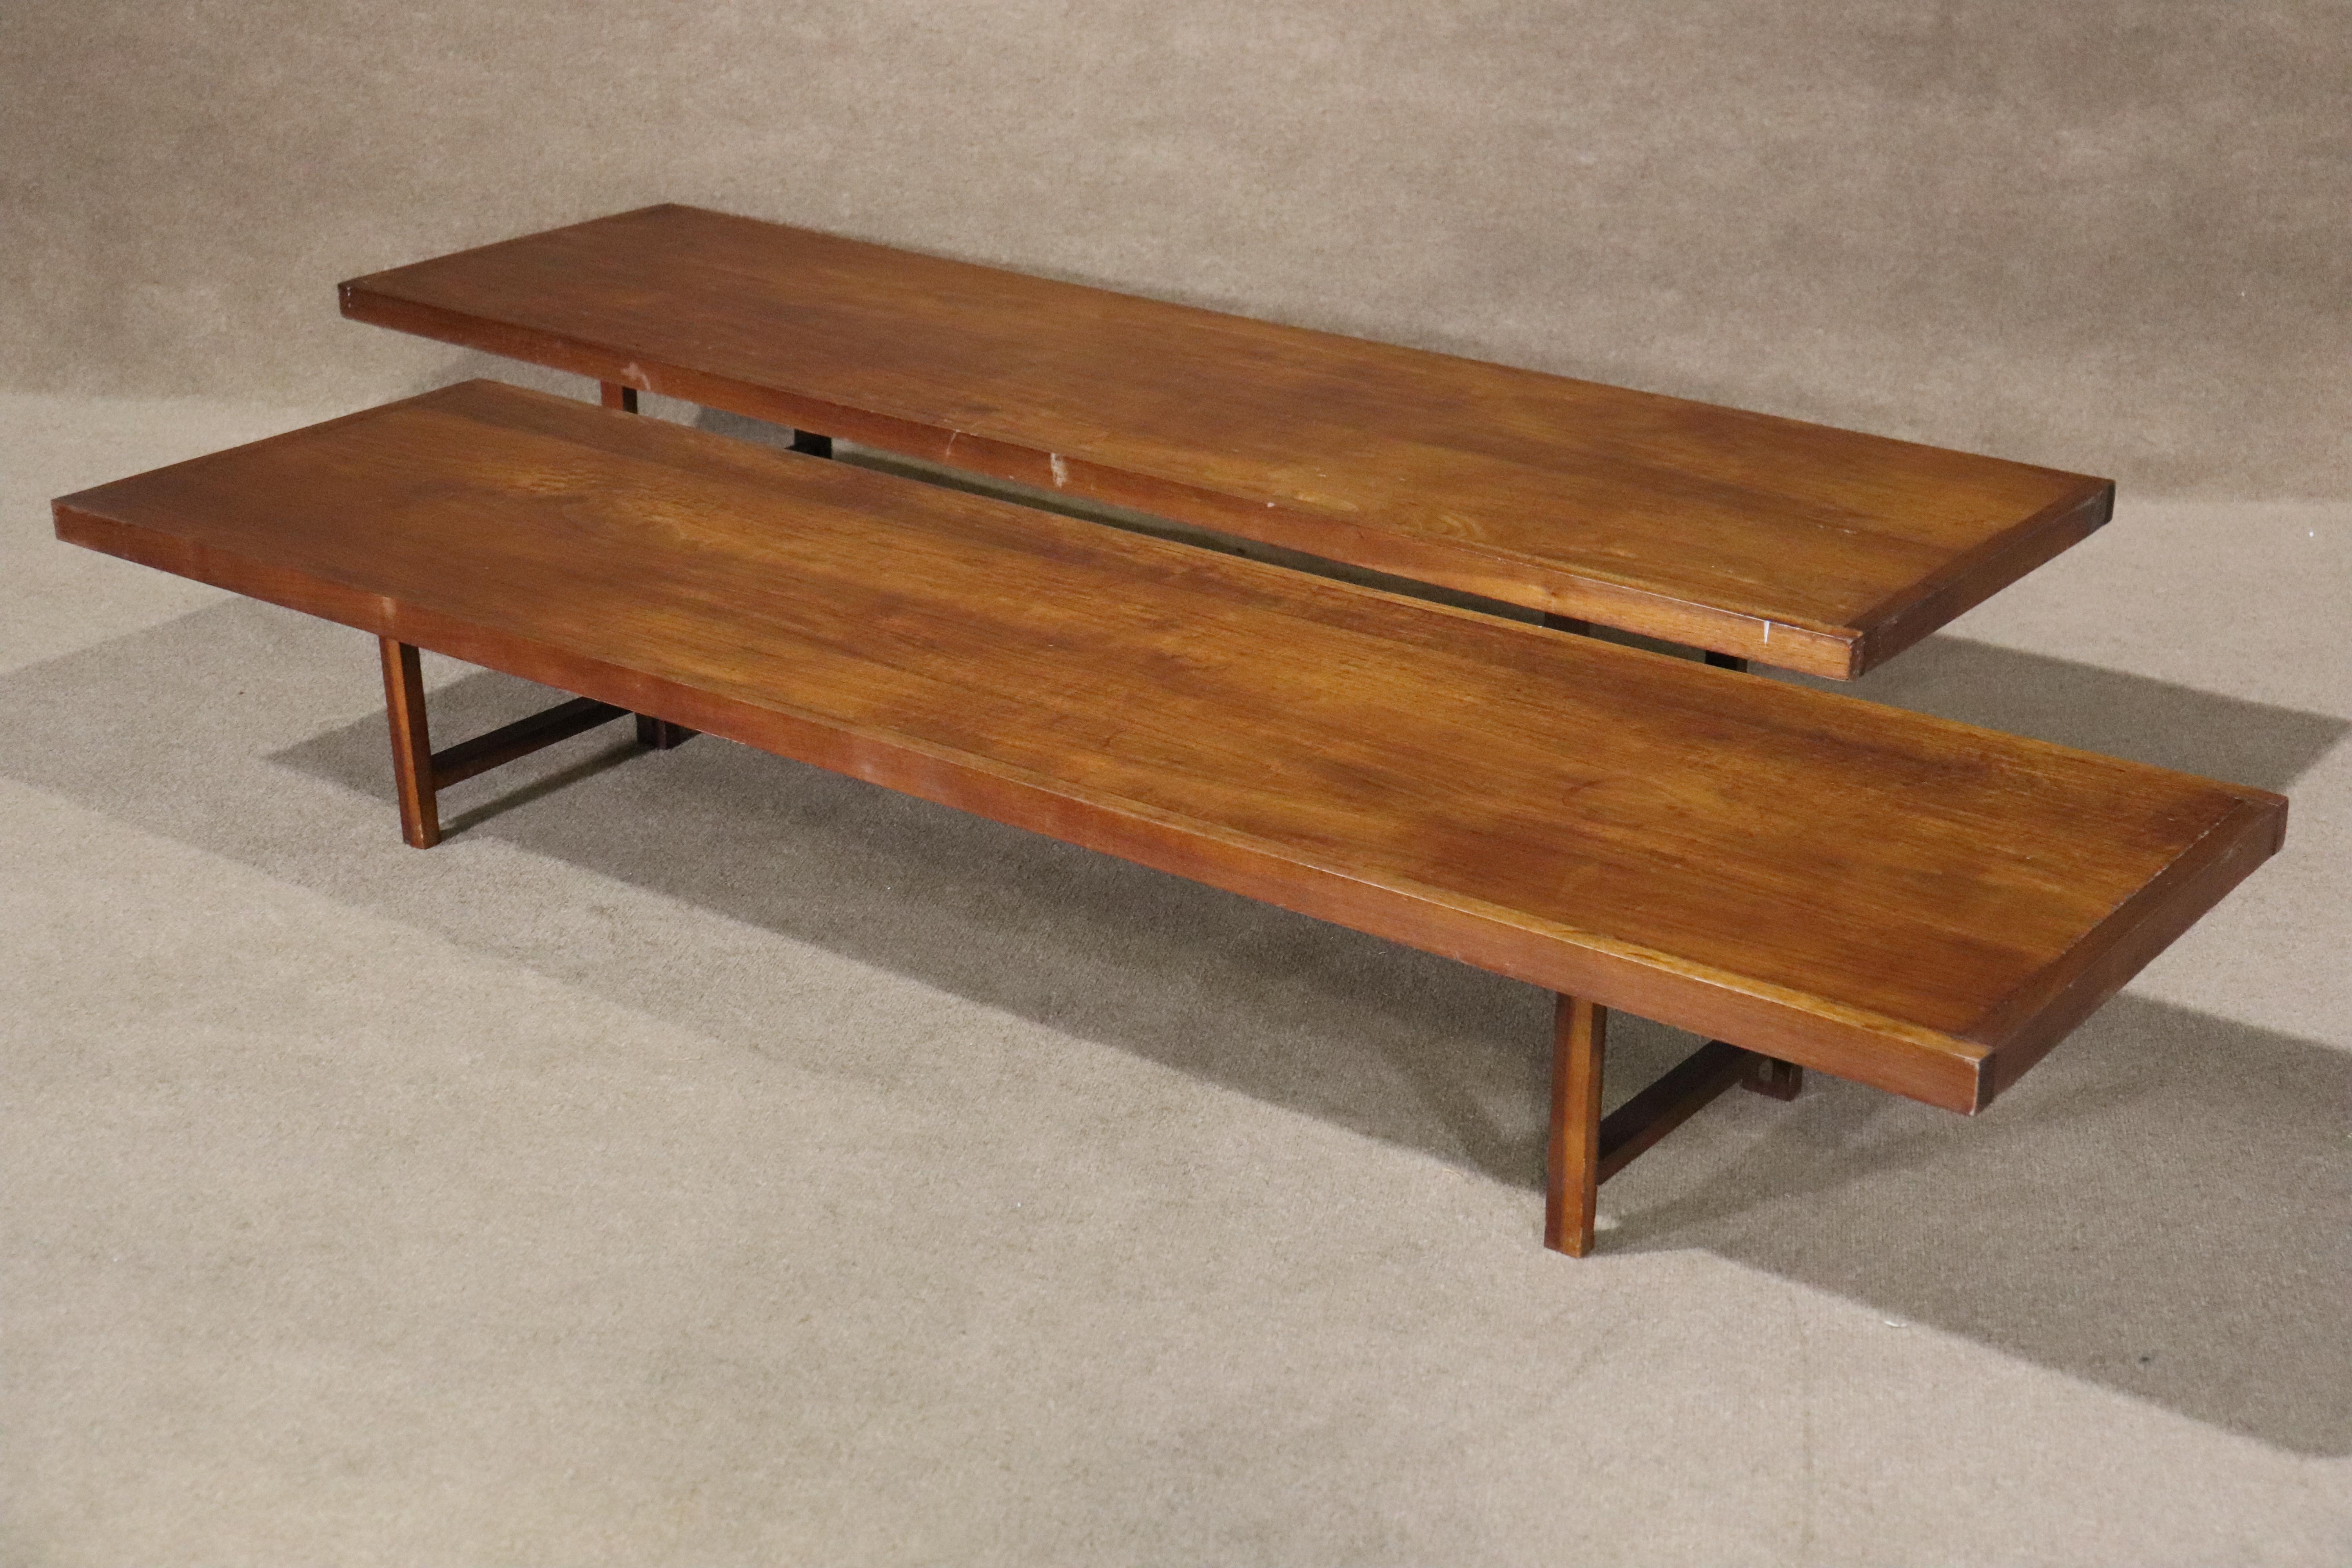 Table basse danoise extra longue. Très proche du design de Torbjørn Afdal, cette table est simple et belle, avec un seul plateau et des pieds en forme de tréteaux.
L'offre concerne une seule table.
Veuillez confirmer le lieu NY ou NJ